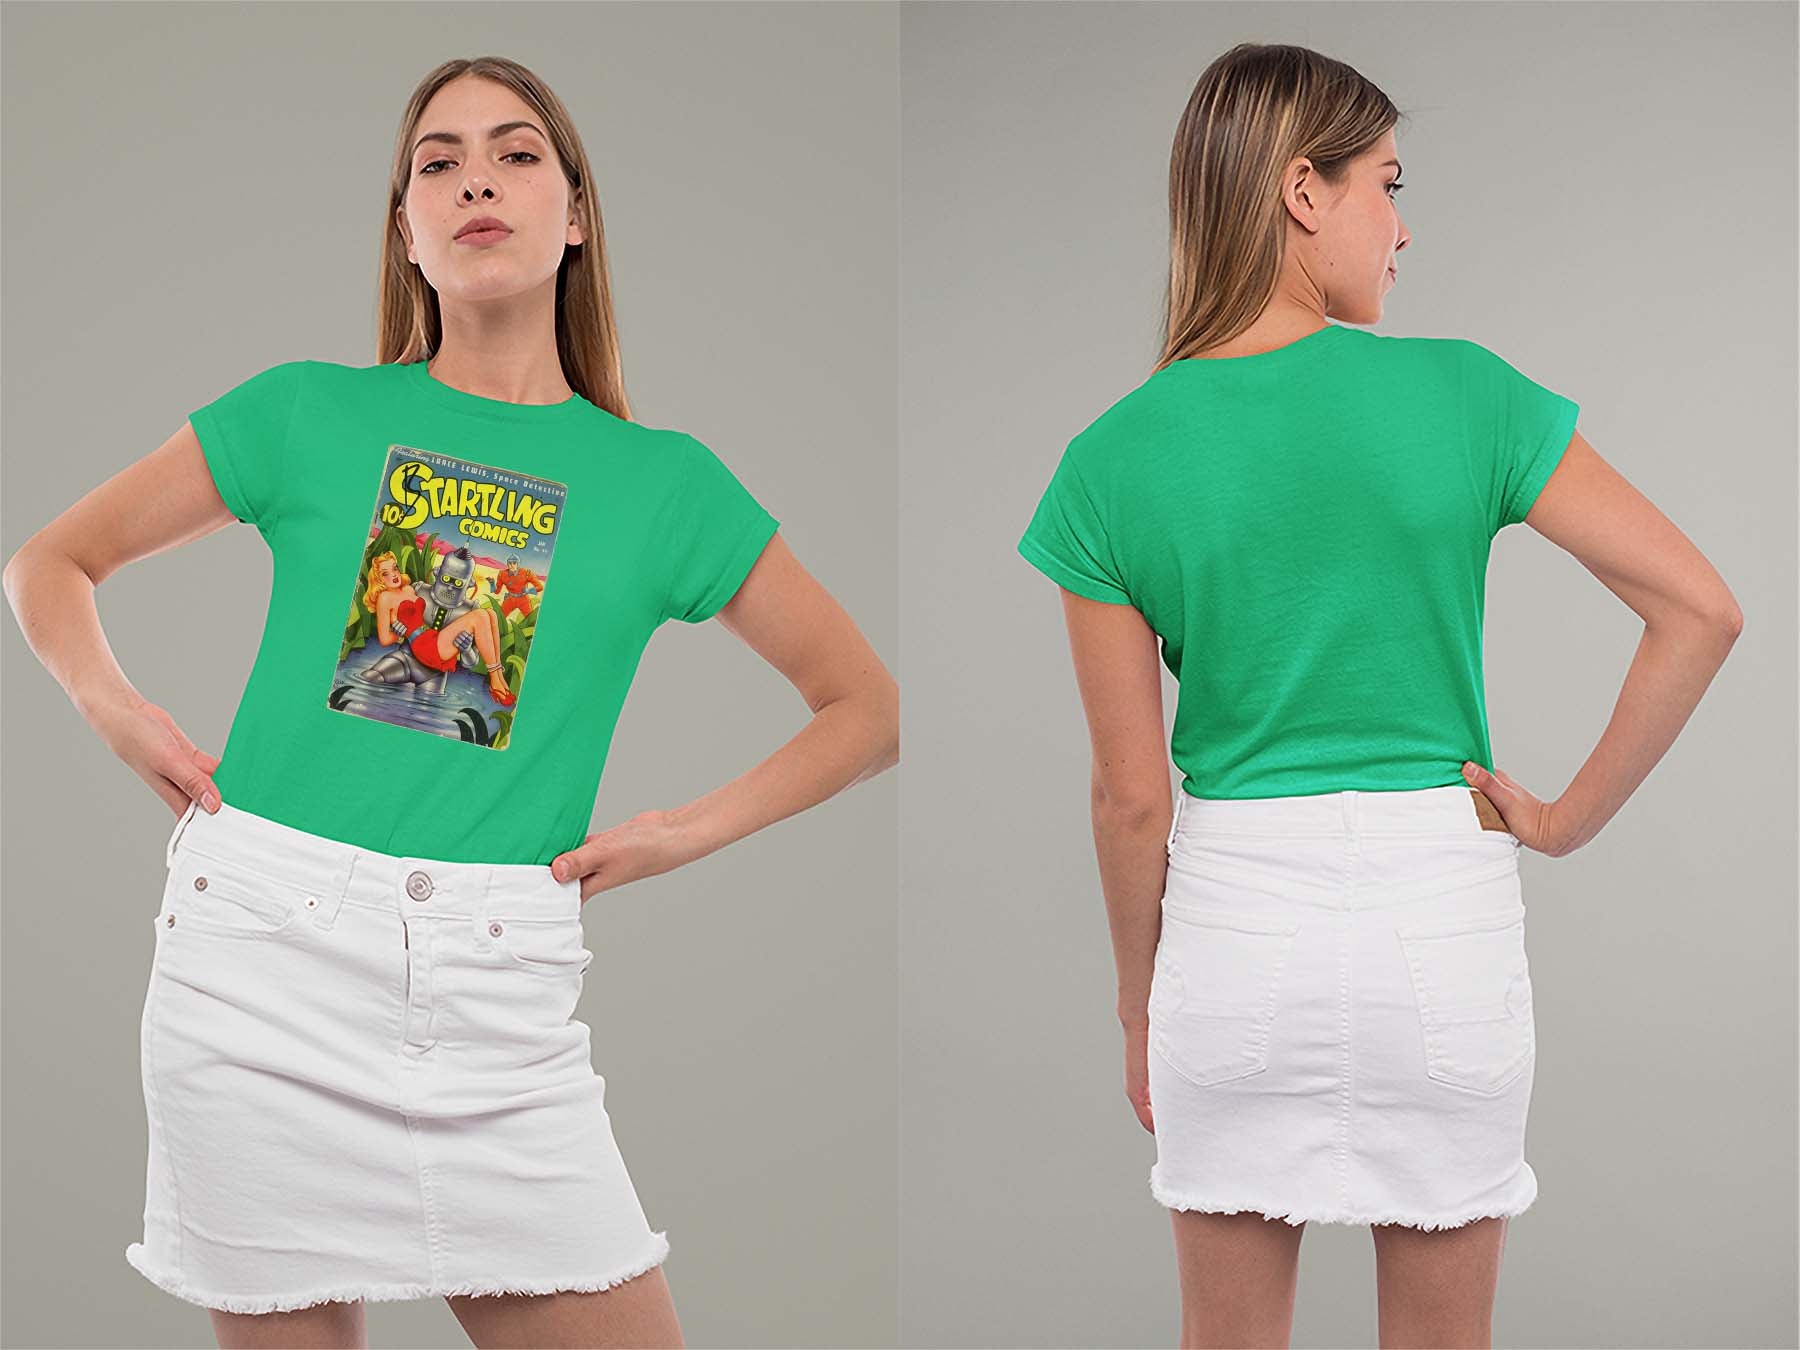 Startling Comics No39 Ladies Crew (Round) Neck Shirt Small Irish Green